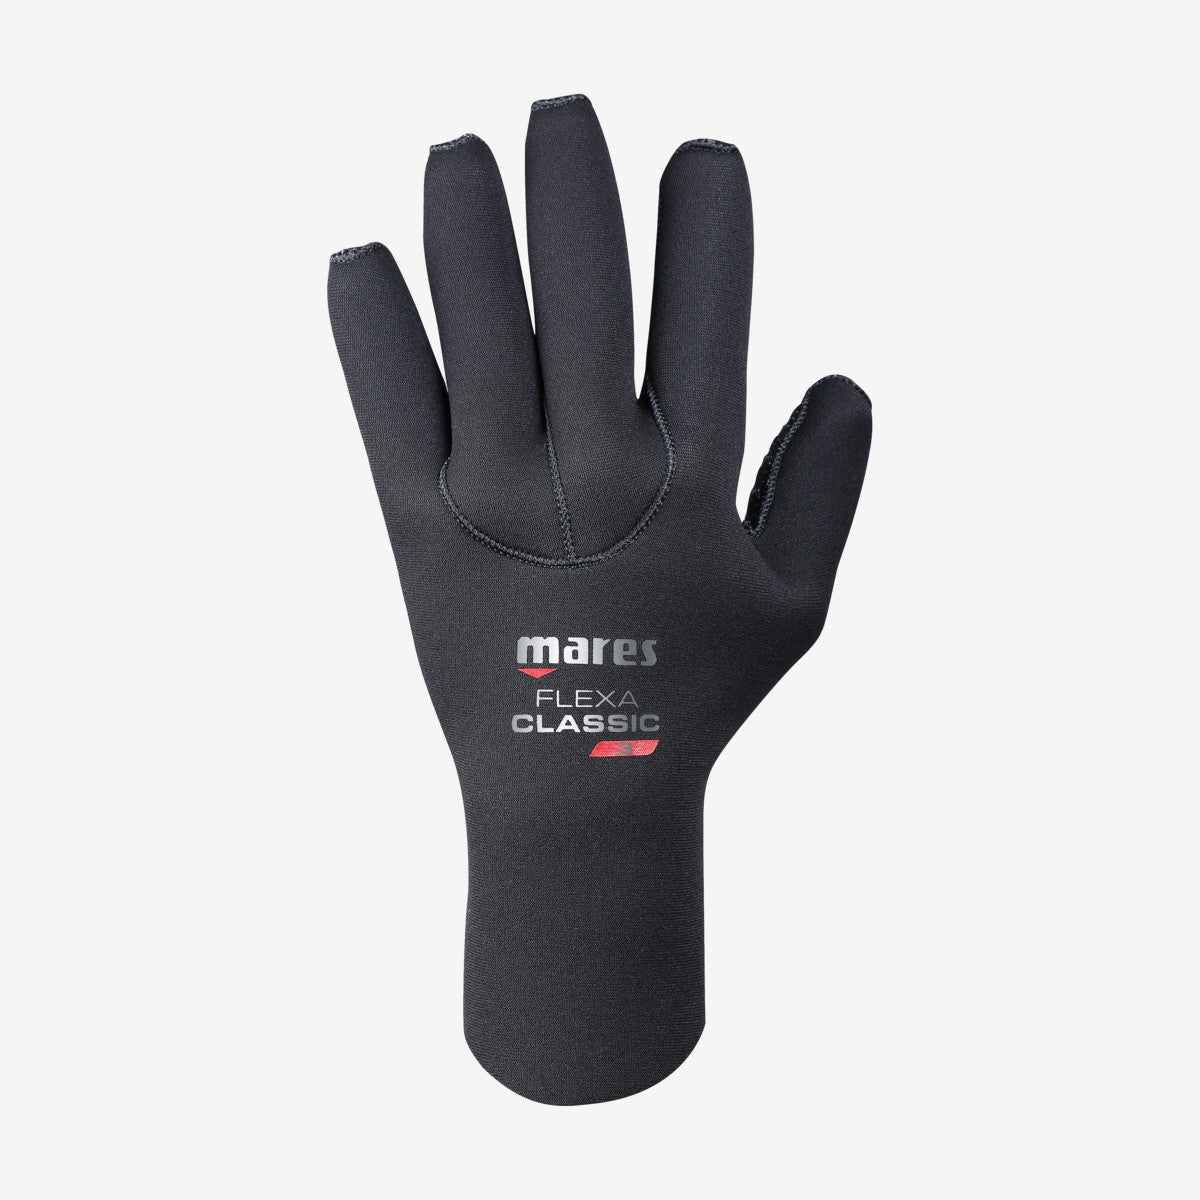 MARES Gloves Flexa classic 3mm כפפות צלילה בעובי 3 מ"מ